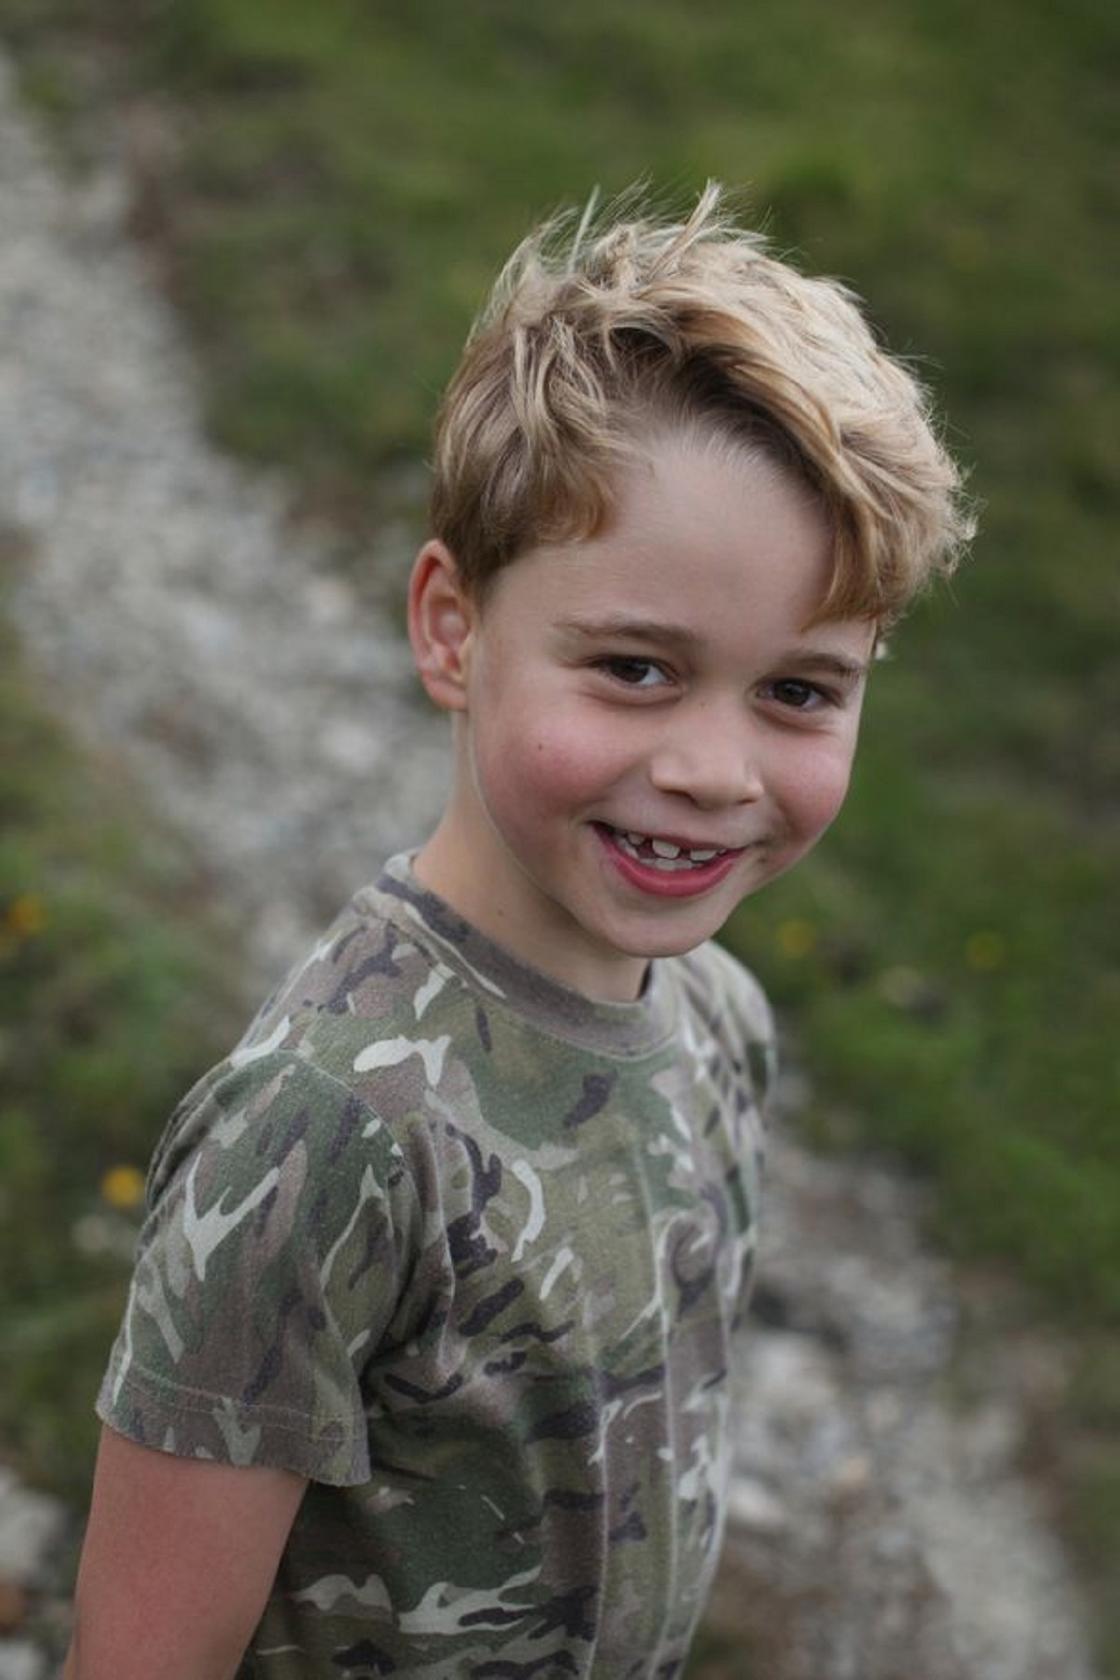 Новые фотографии принца Джорджа опубликовали в честь его 7-летия